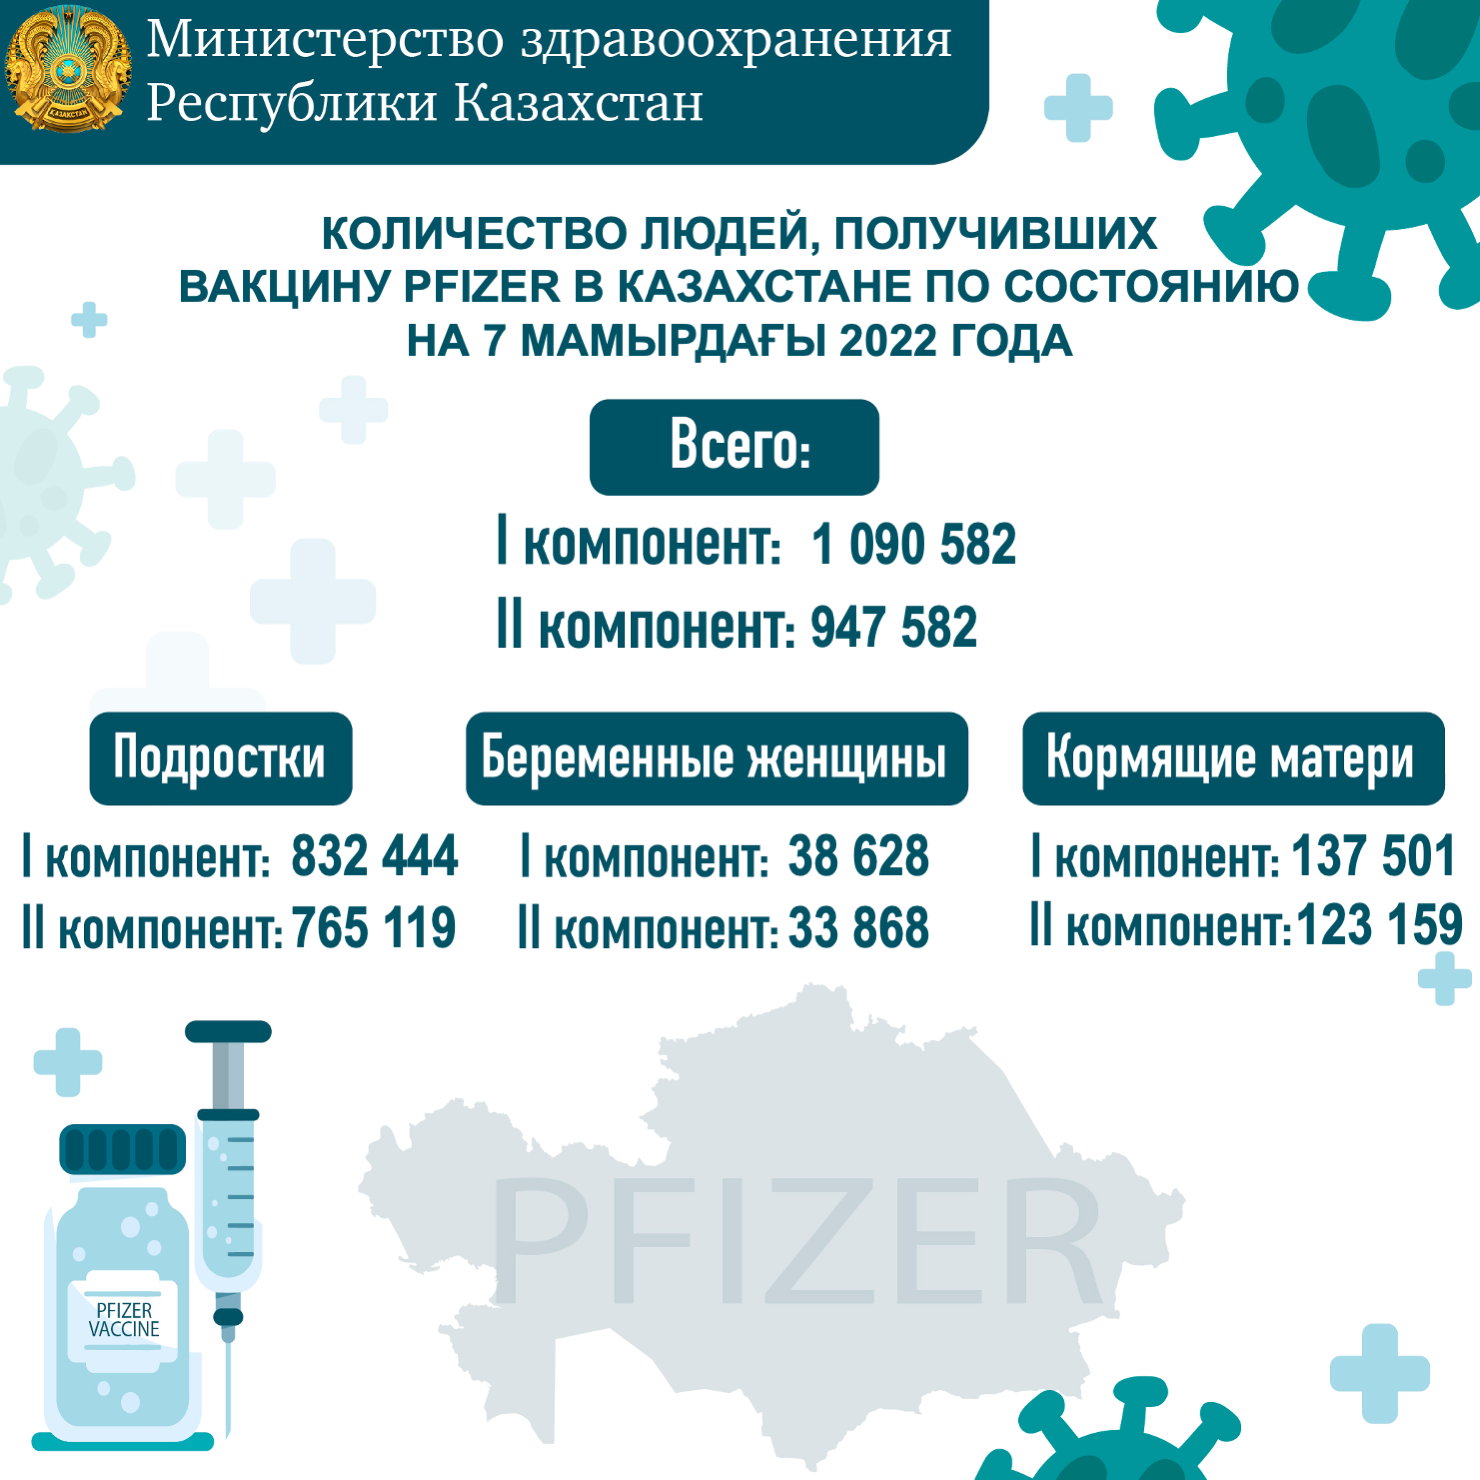 Количество людей, получивших вакцину PFIZER в Казахстане по состоянию на 7 мая 2022 года